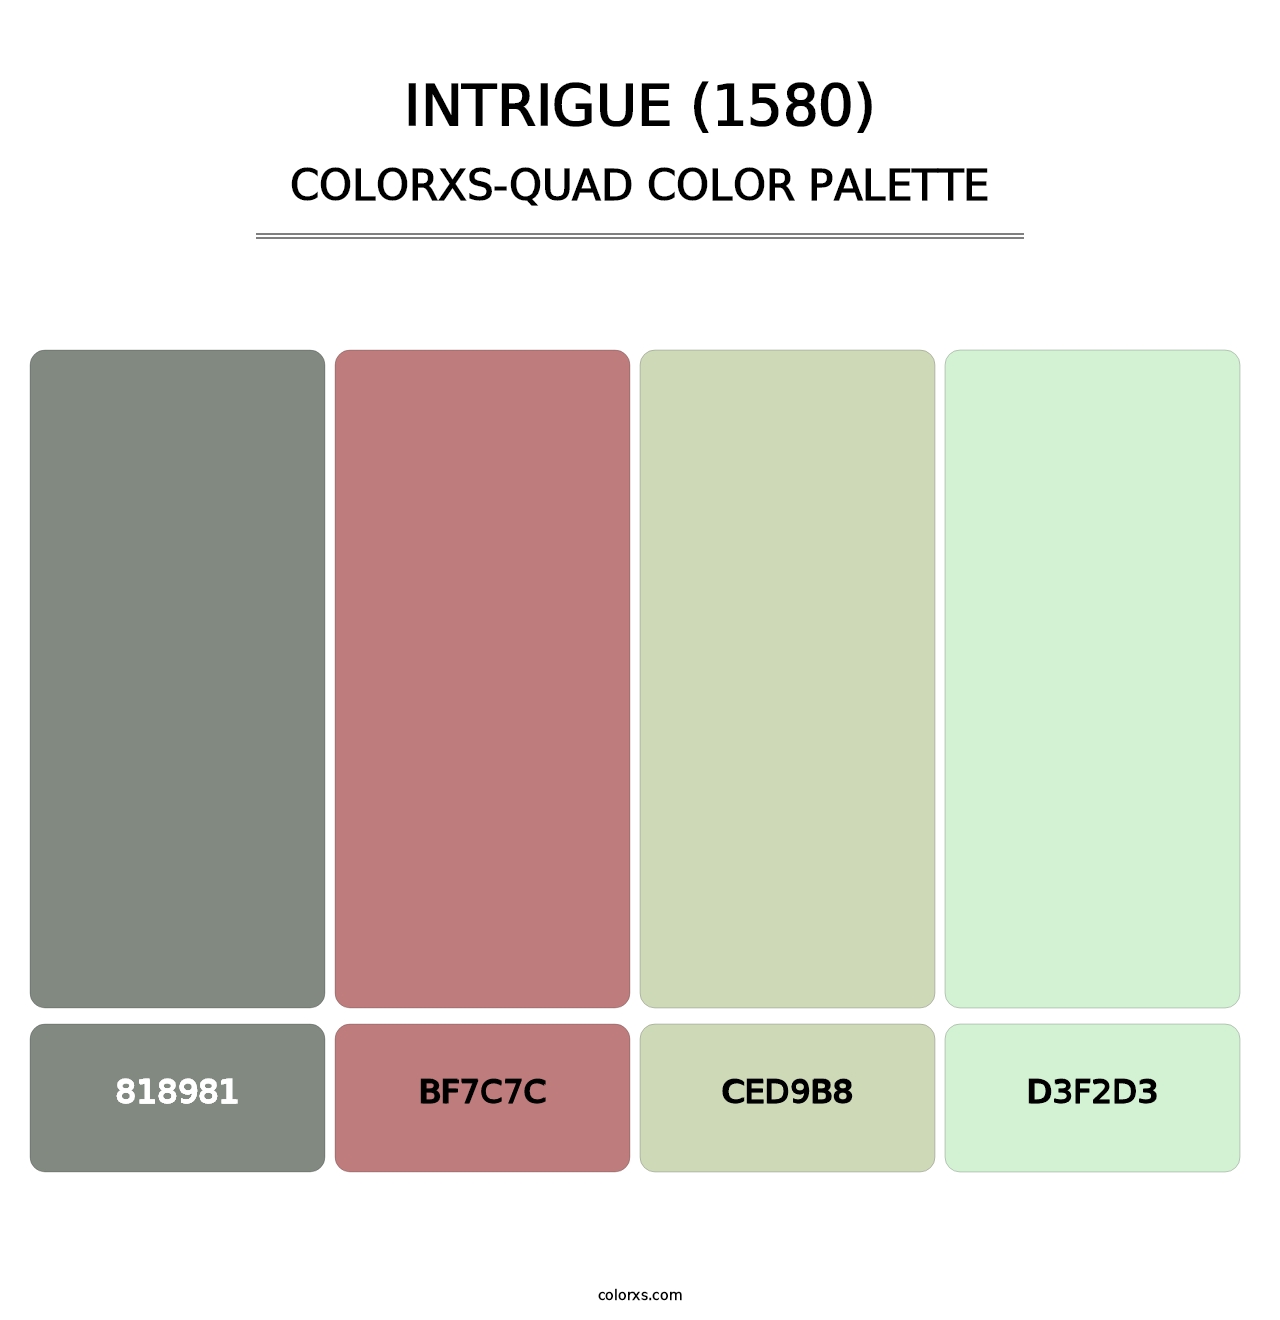 Intrigue (1580) - Colorxs Quad Palette